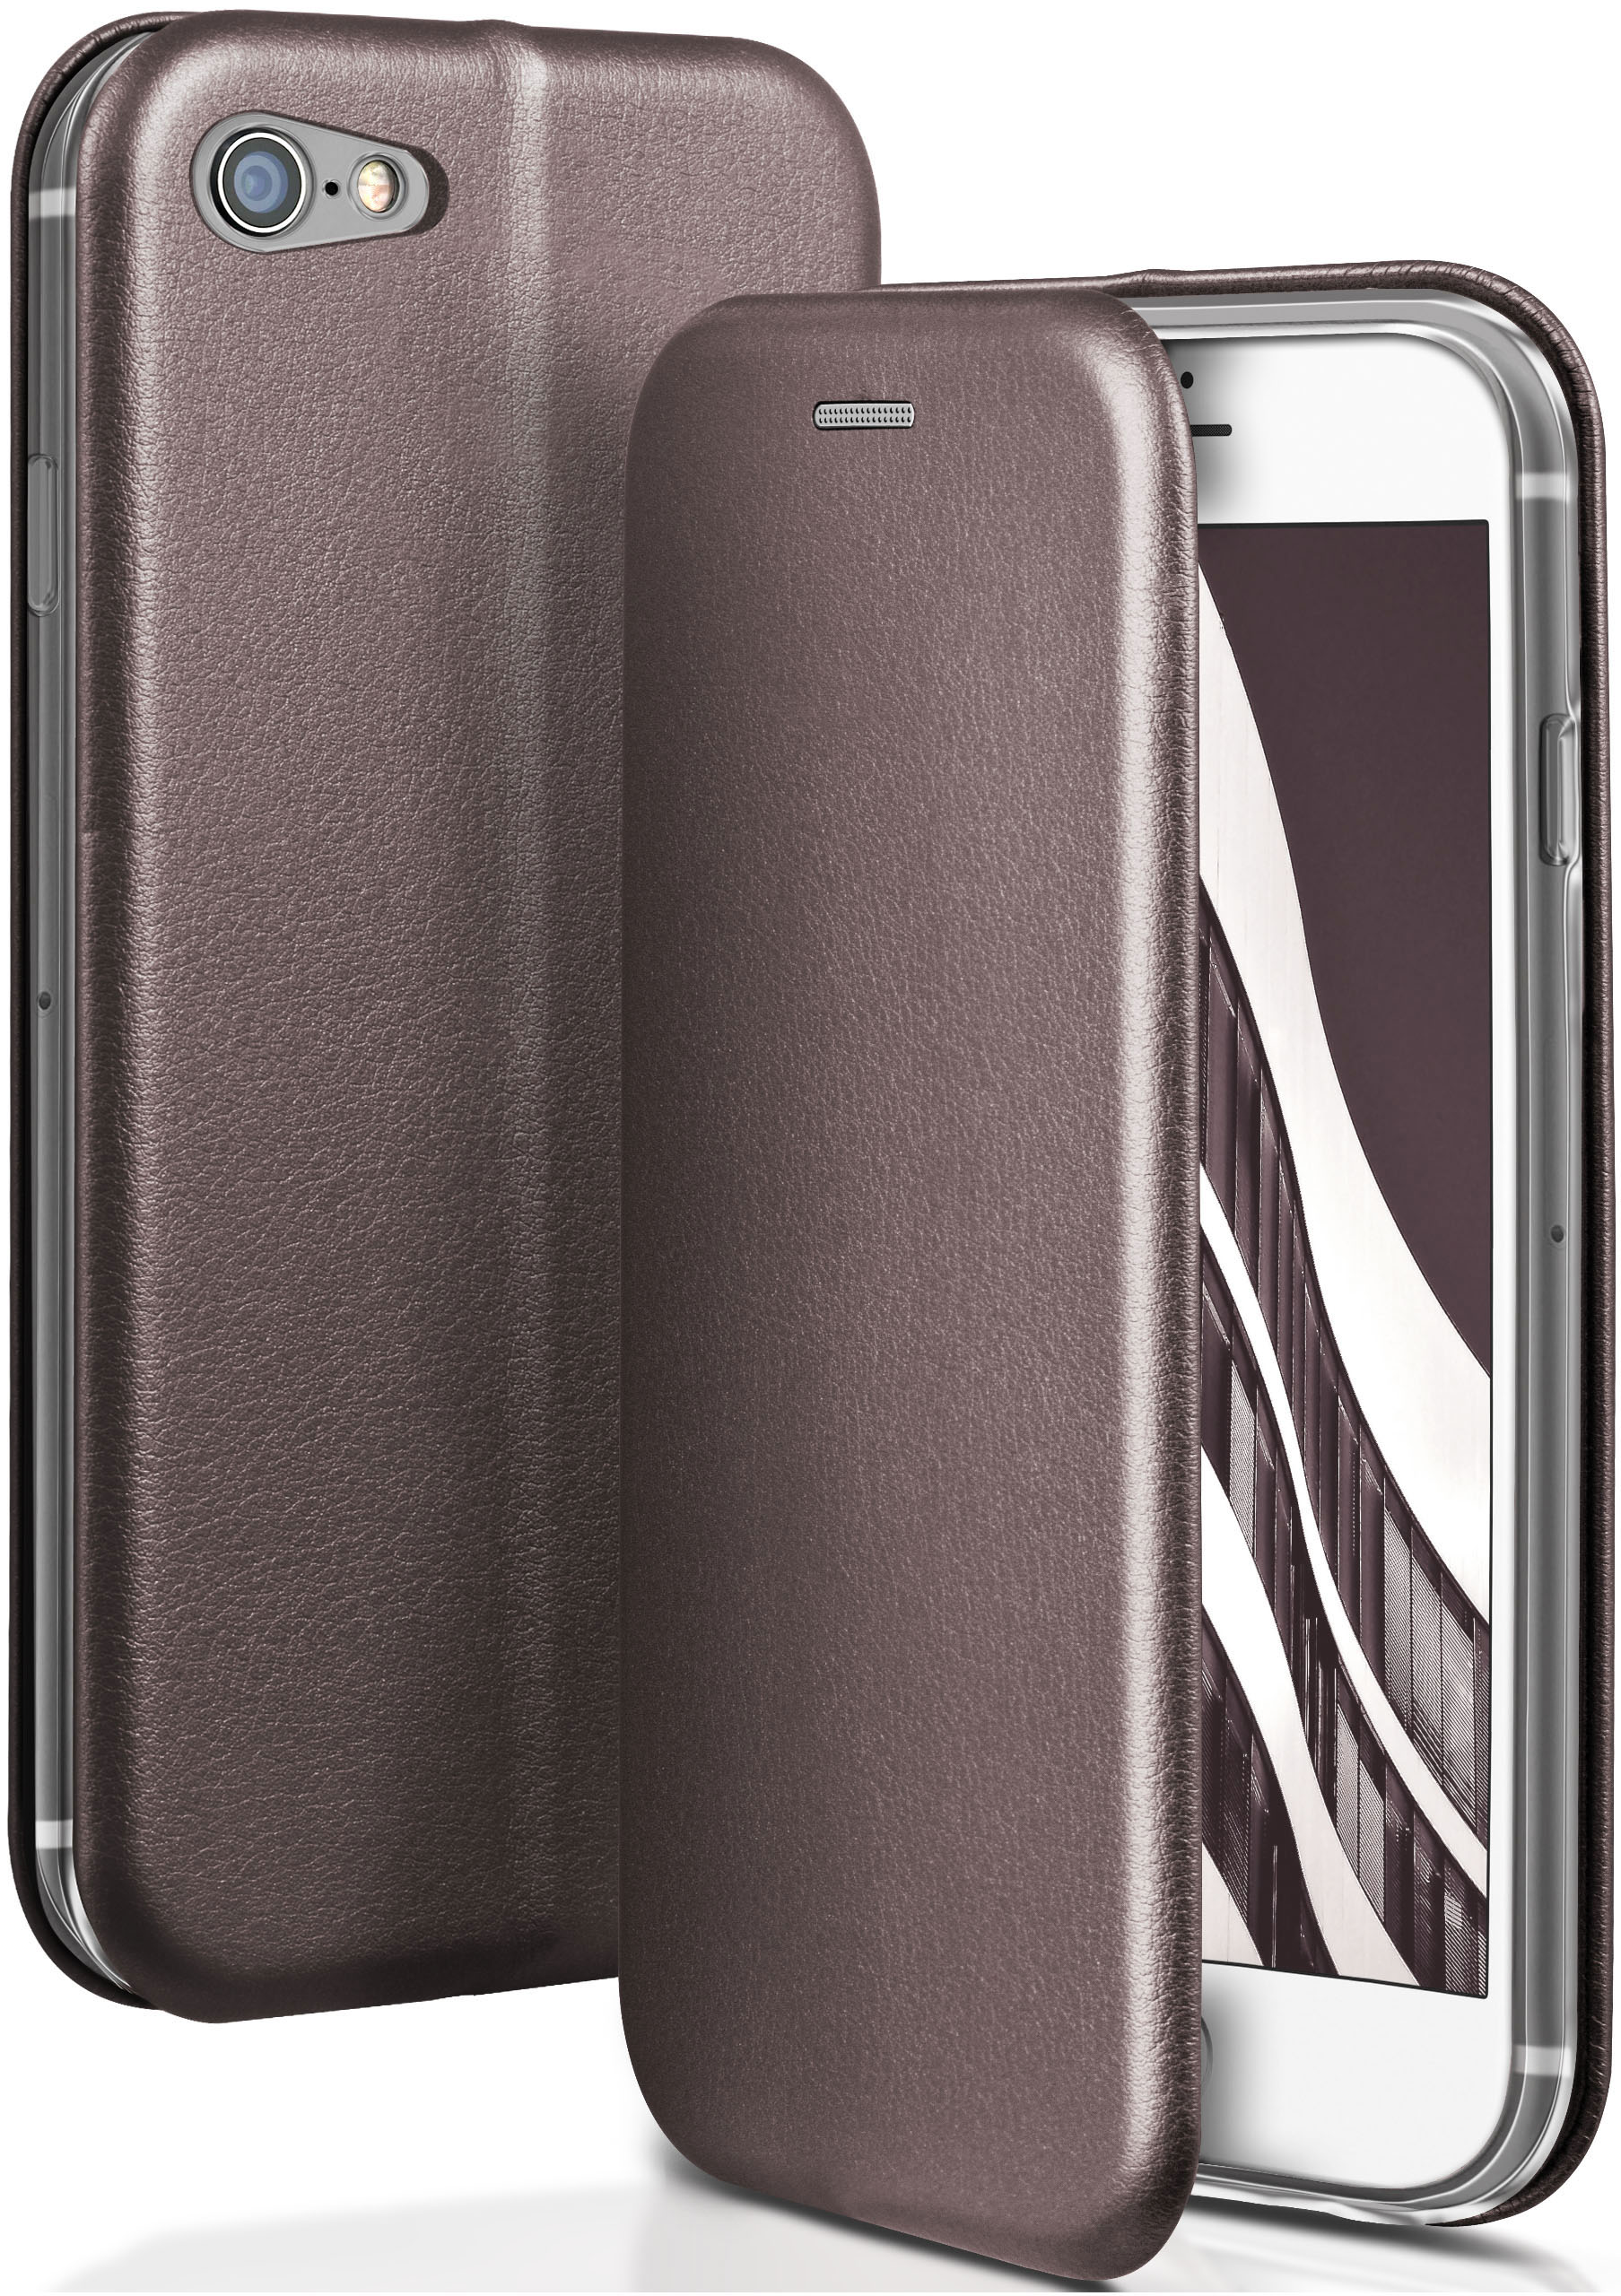 ONEFLOW Business Case, Flip Cover, Skyscraper iPhone / 8, - 7 Grey iPhone Apple